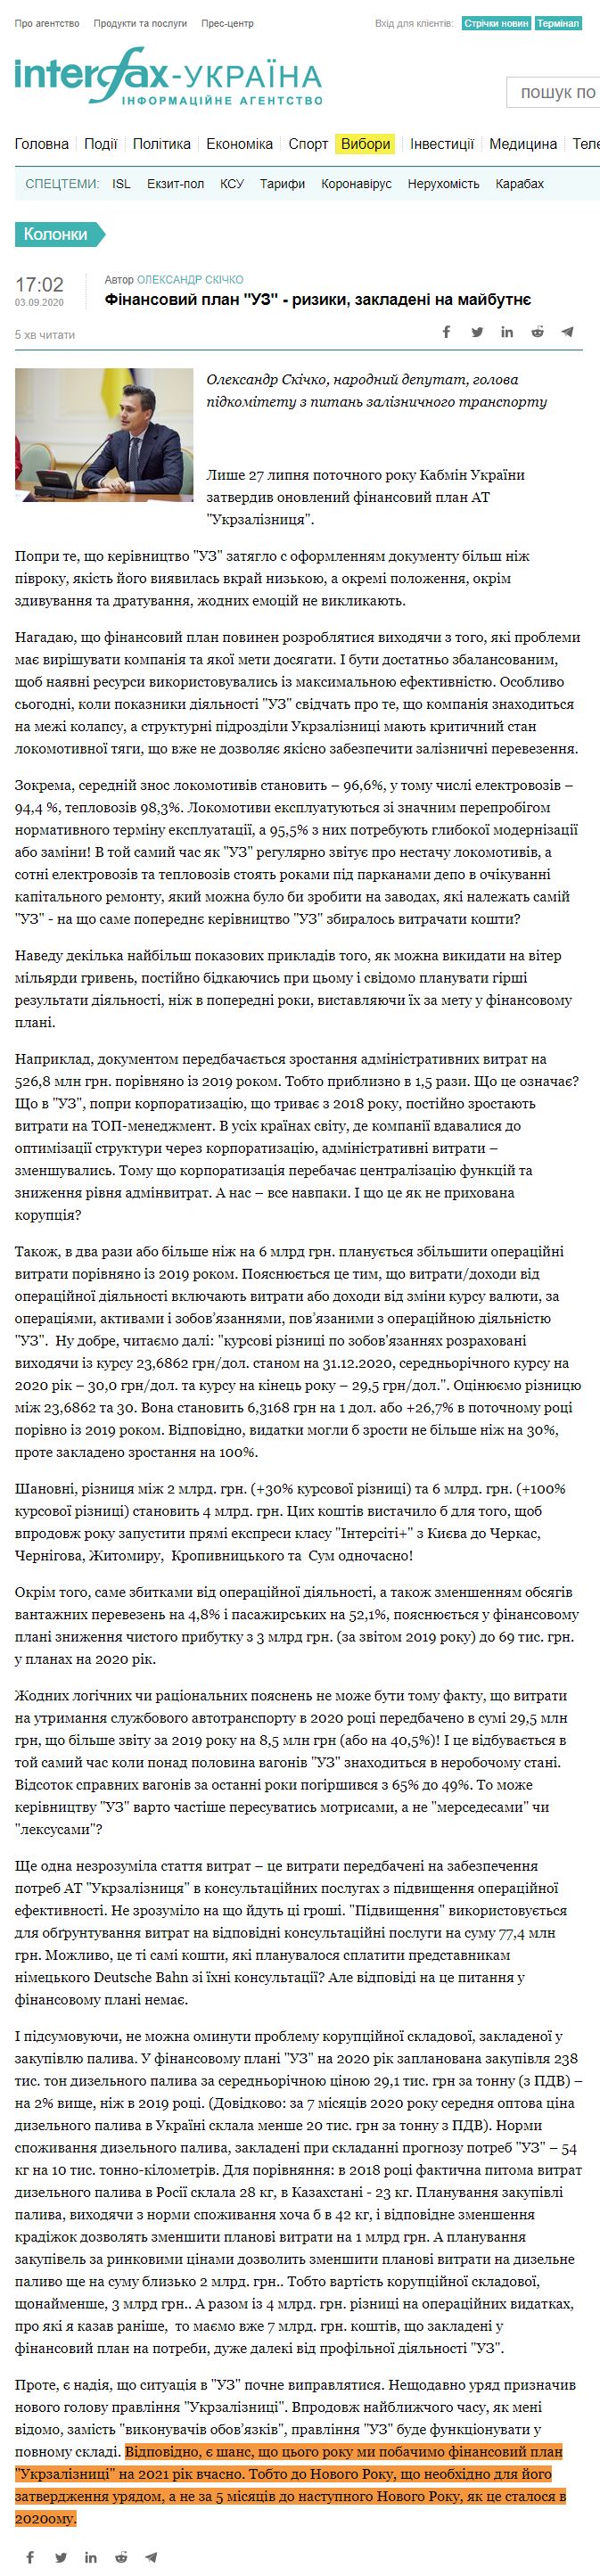 https://ua.interfax.com.ua/news/blog/685260.html